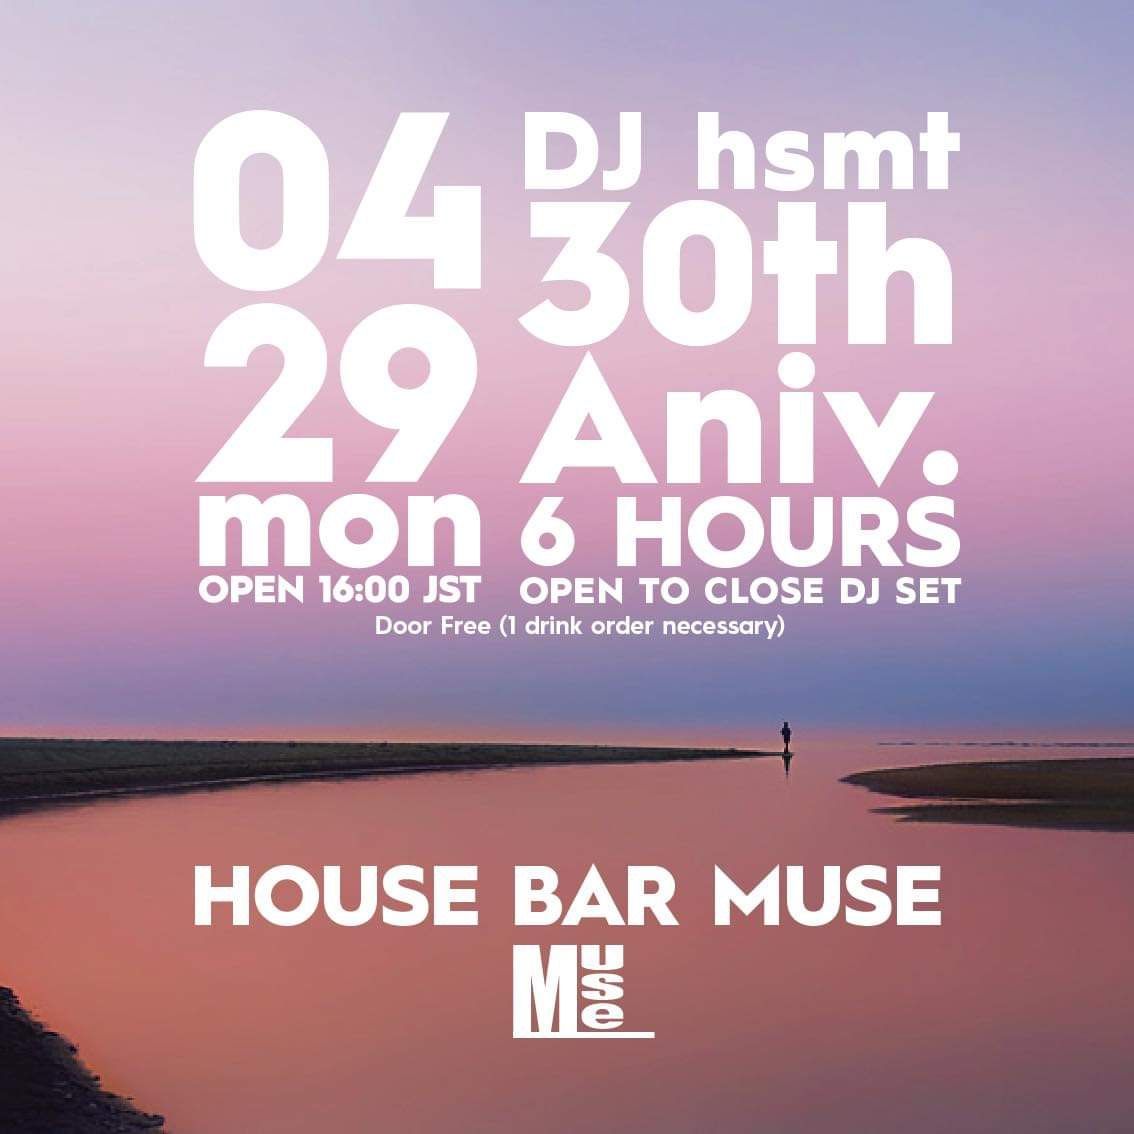 DJ hsmt 30th anniversary